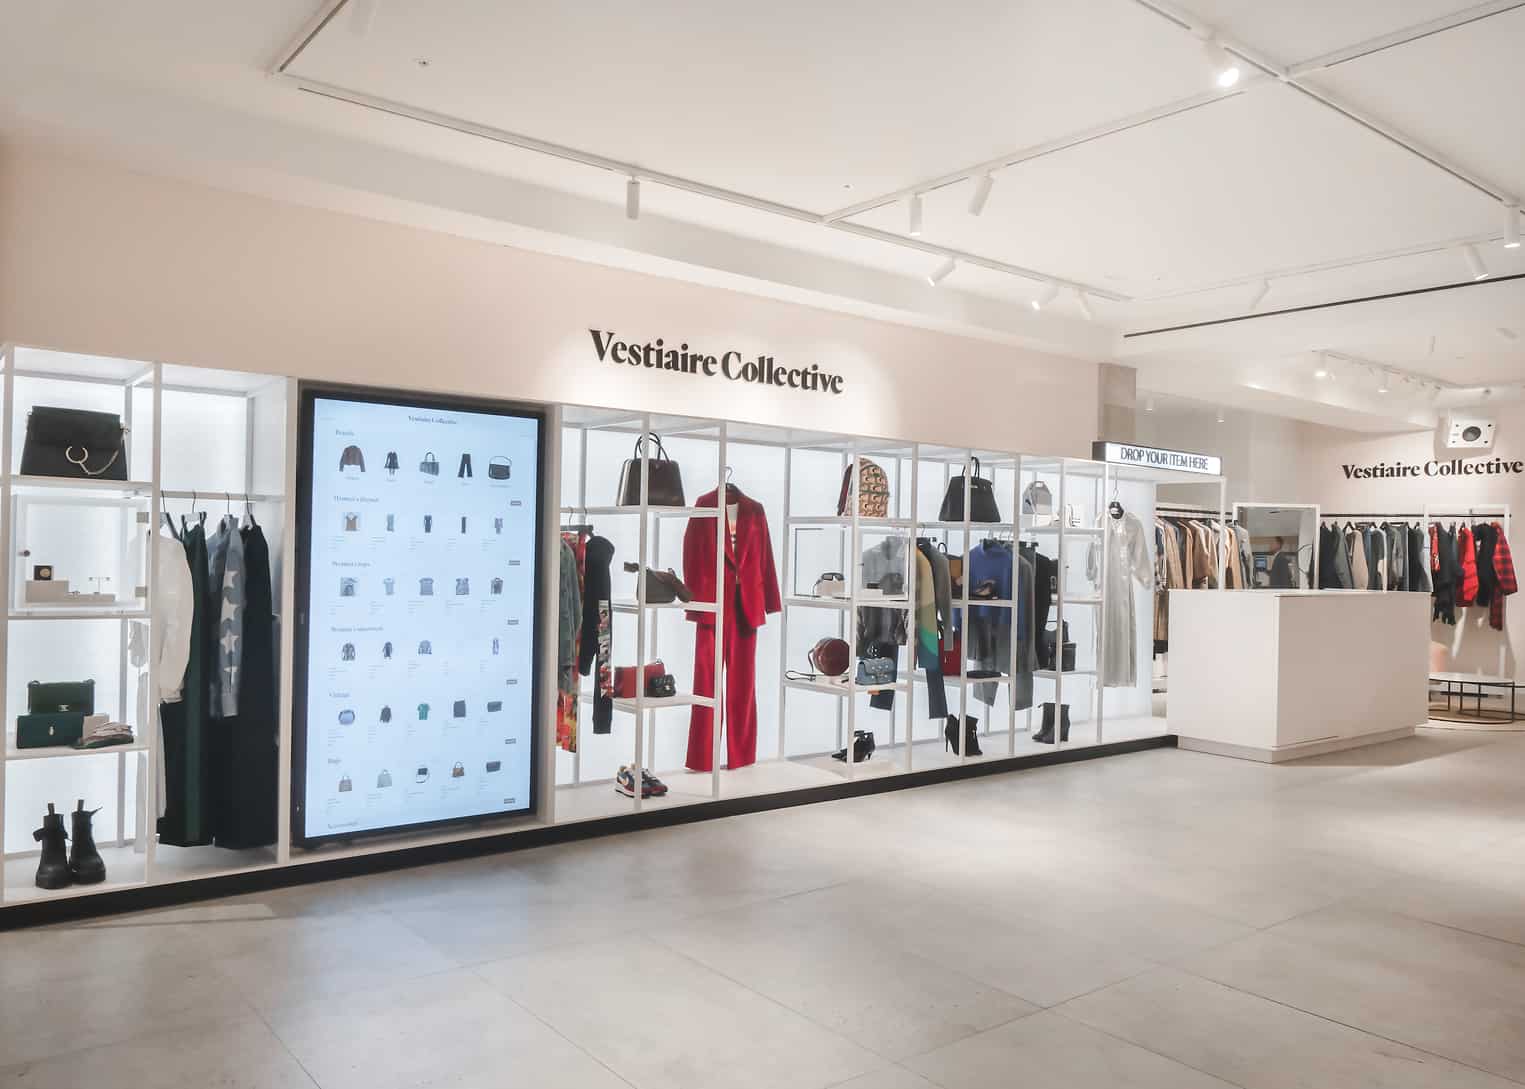 Louis Vuitton shop at Selfridges department store in London